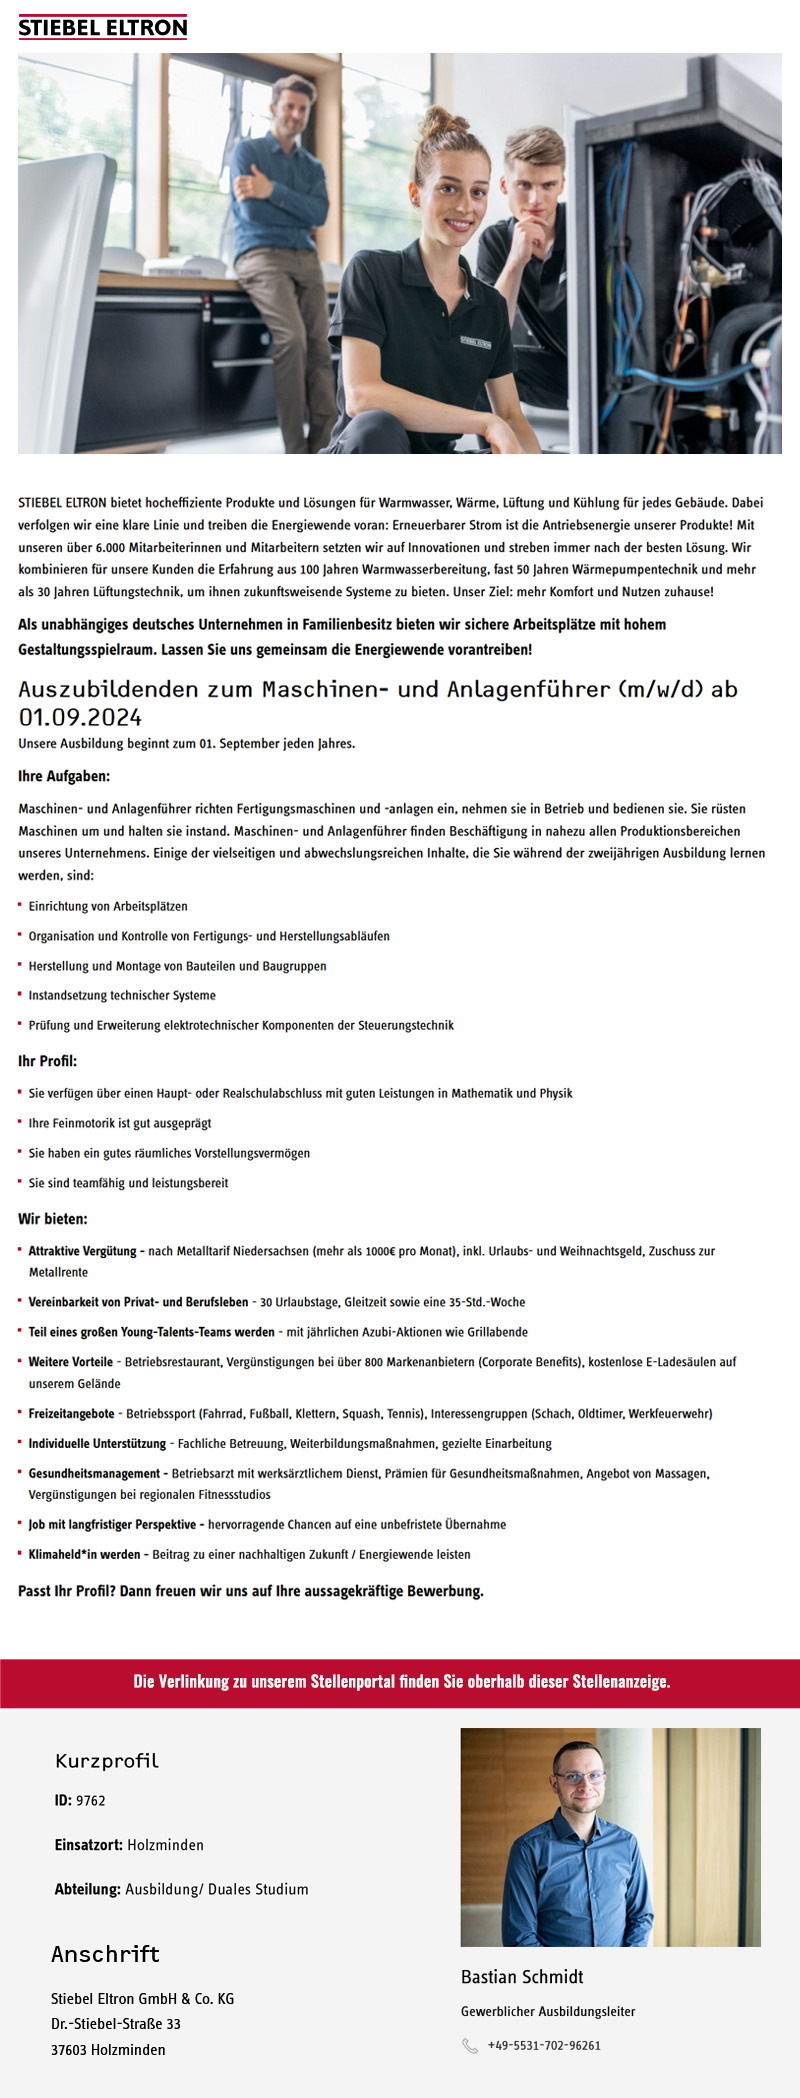  Auszubildenden zum Maschinen- und Anlagenführer (m/w/d) ab 01.09.2024 - Stiebel Eltron GmbH & Co. KG